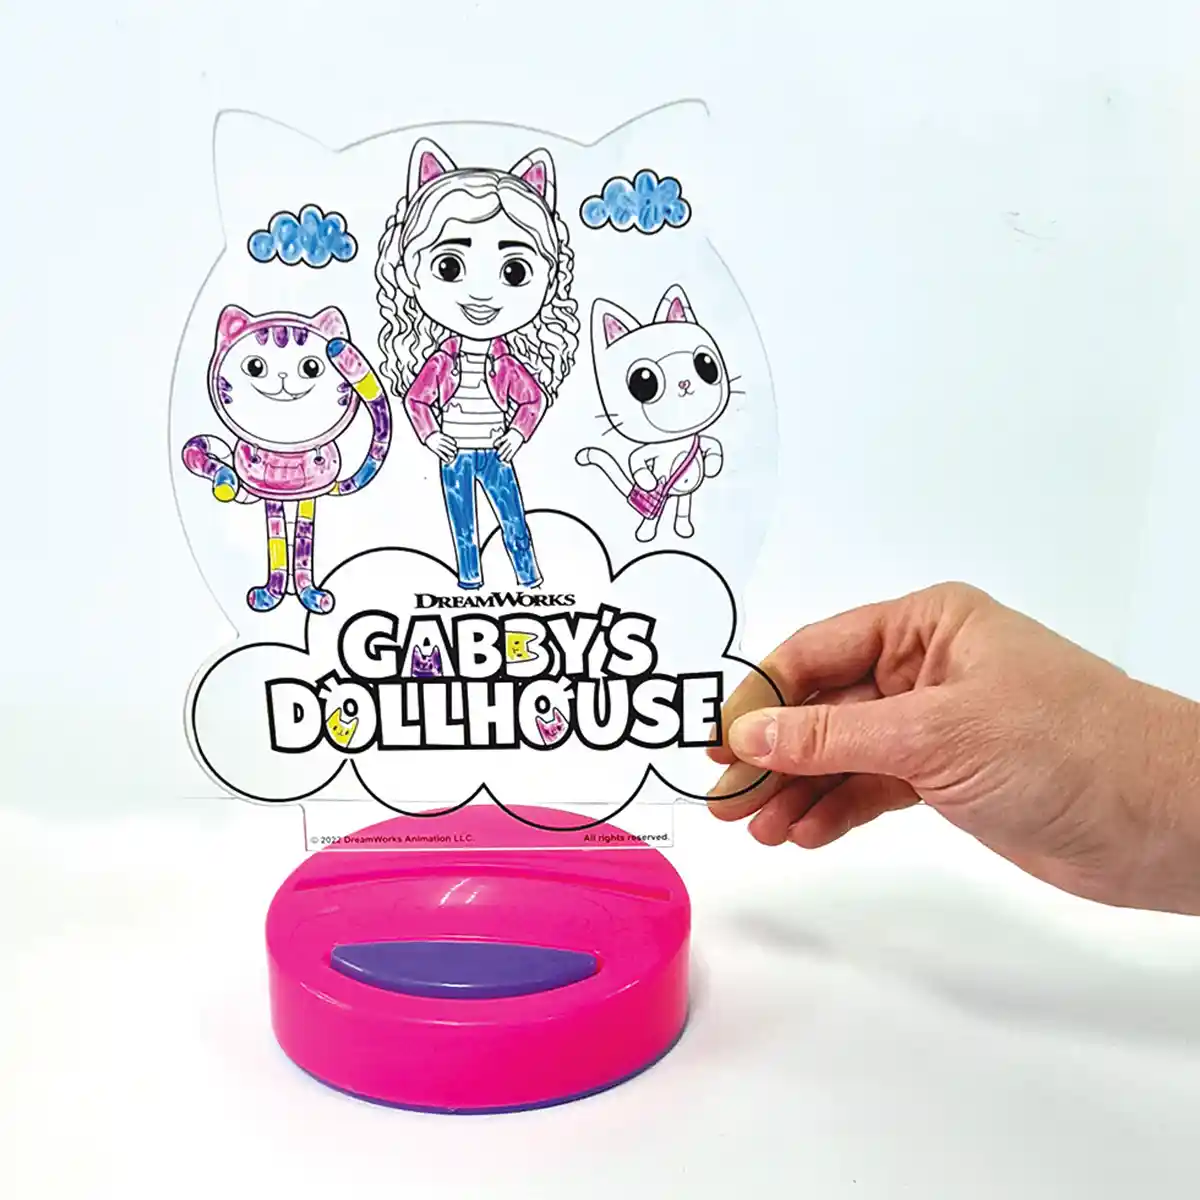 Introducing Gabby's Dollhouse! 